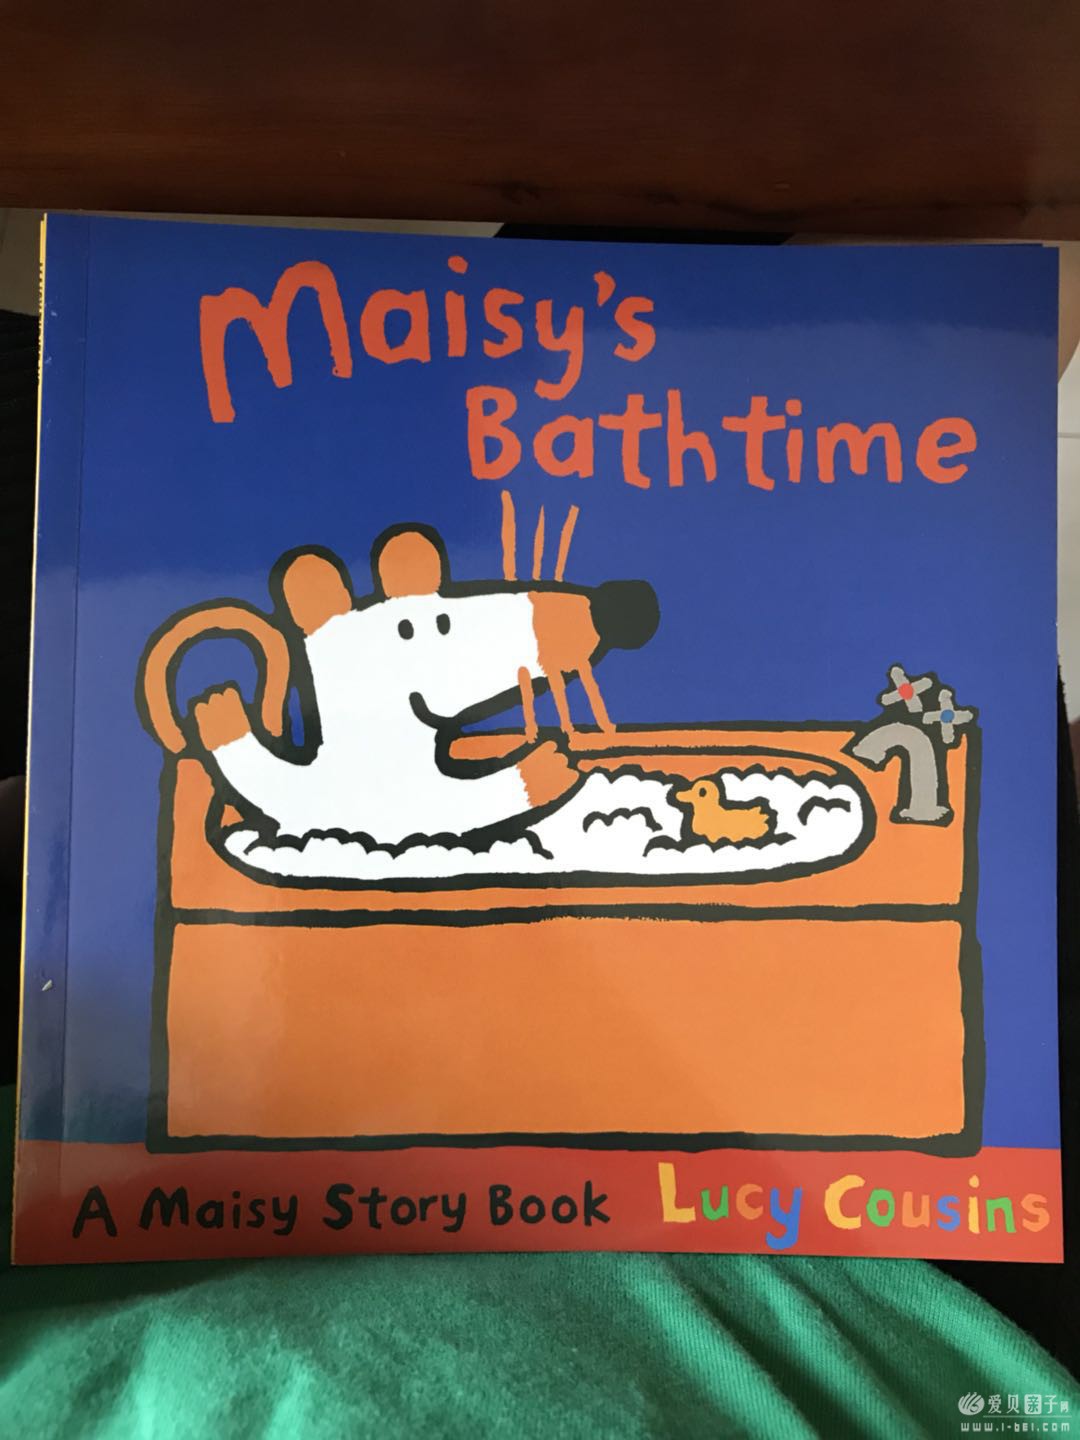 Maisy's bathtime